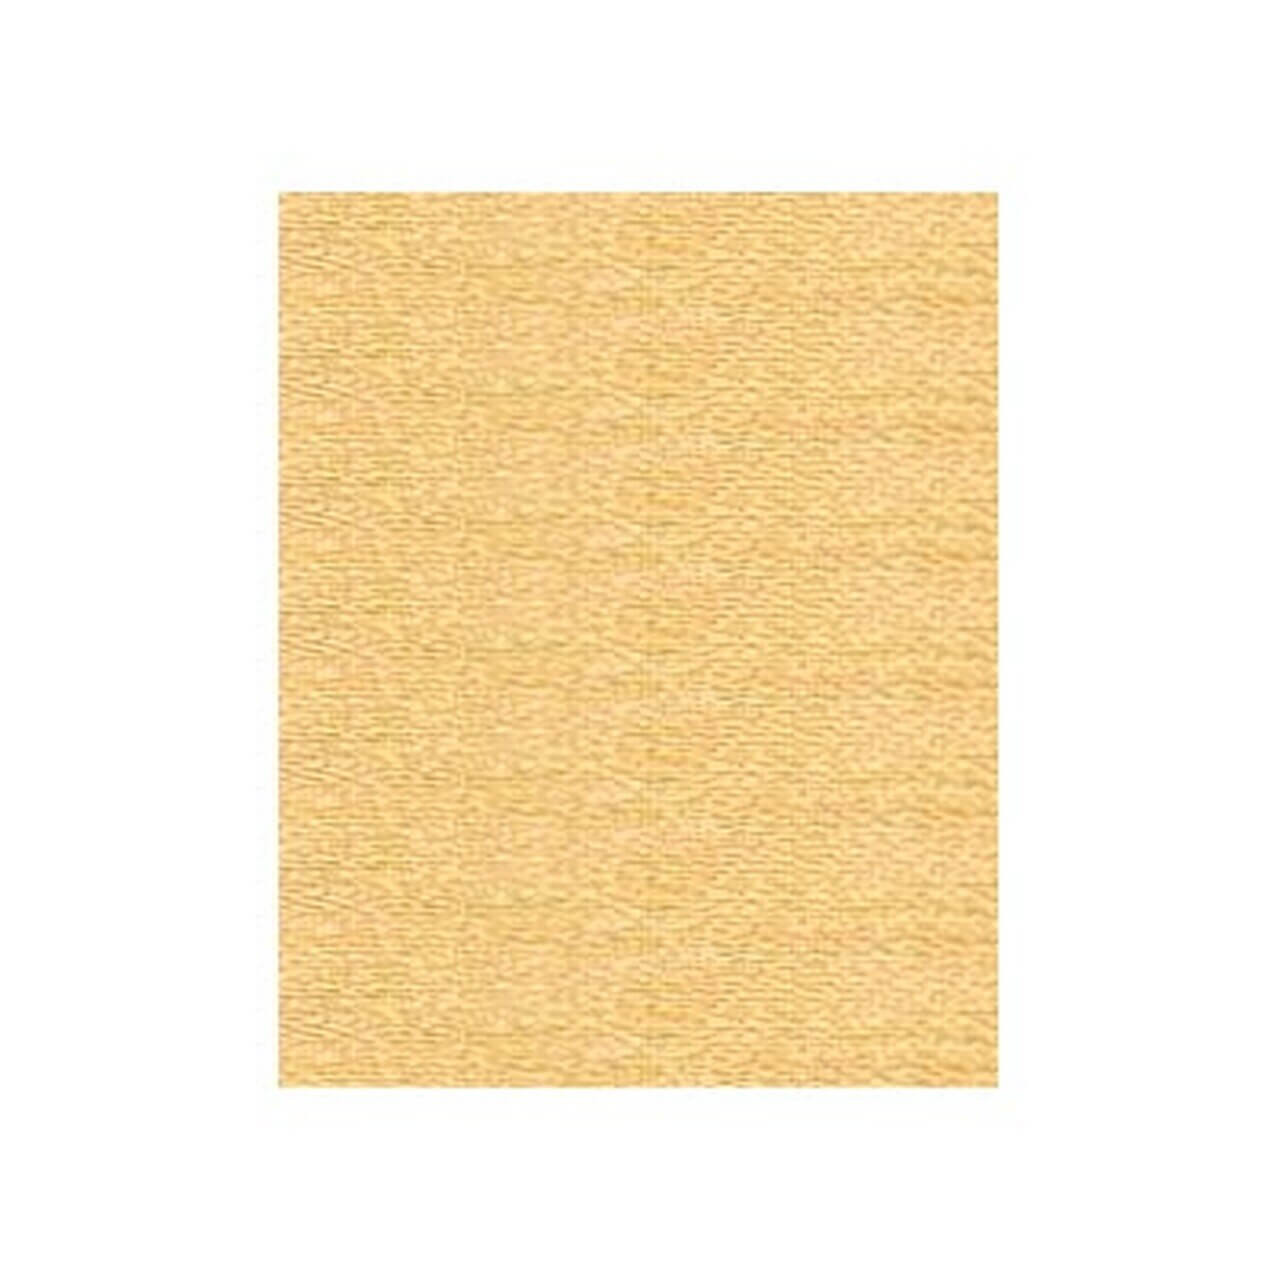 Polyneon - Sewing & Quilting Thread - 440yd Spool - 9845-1670 Gold